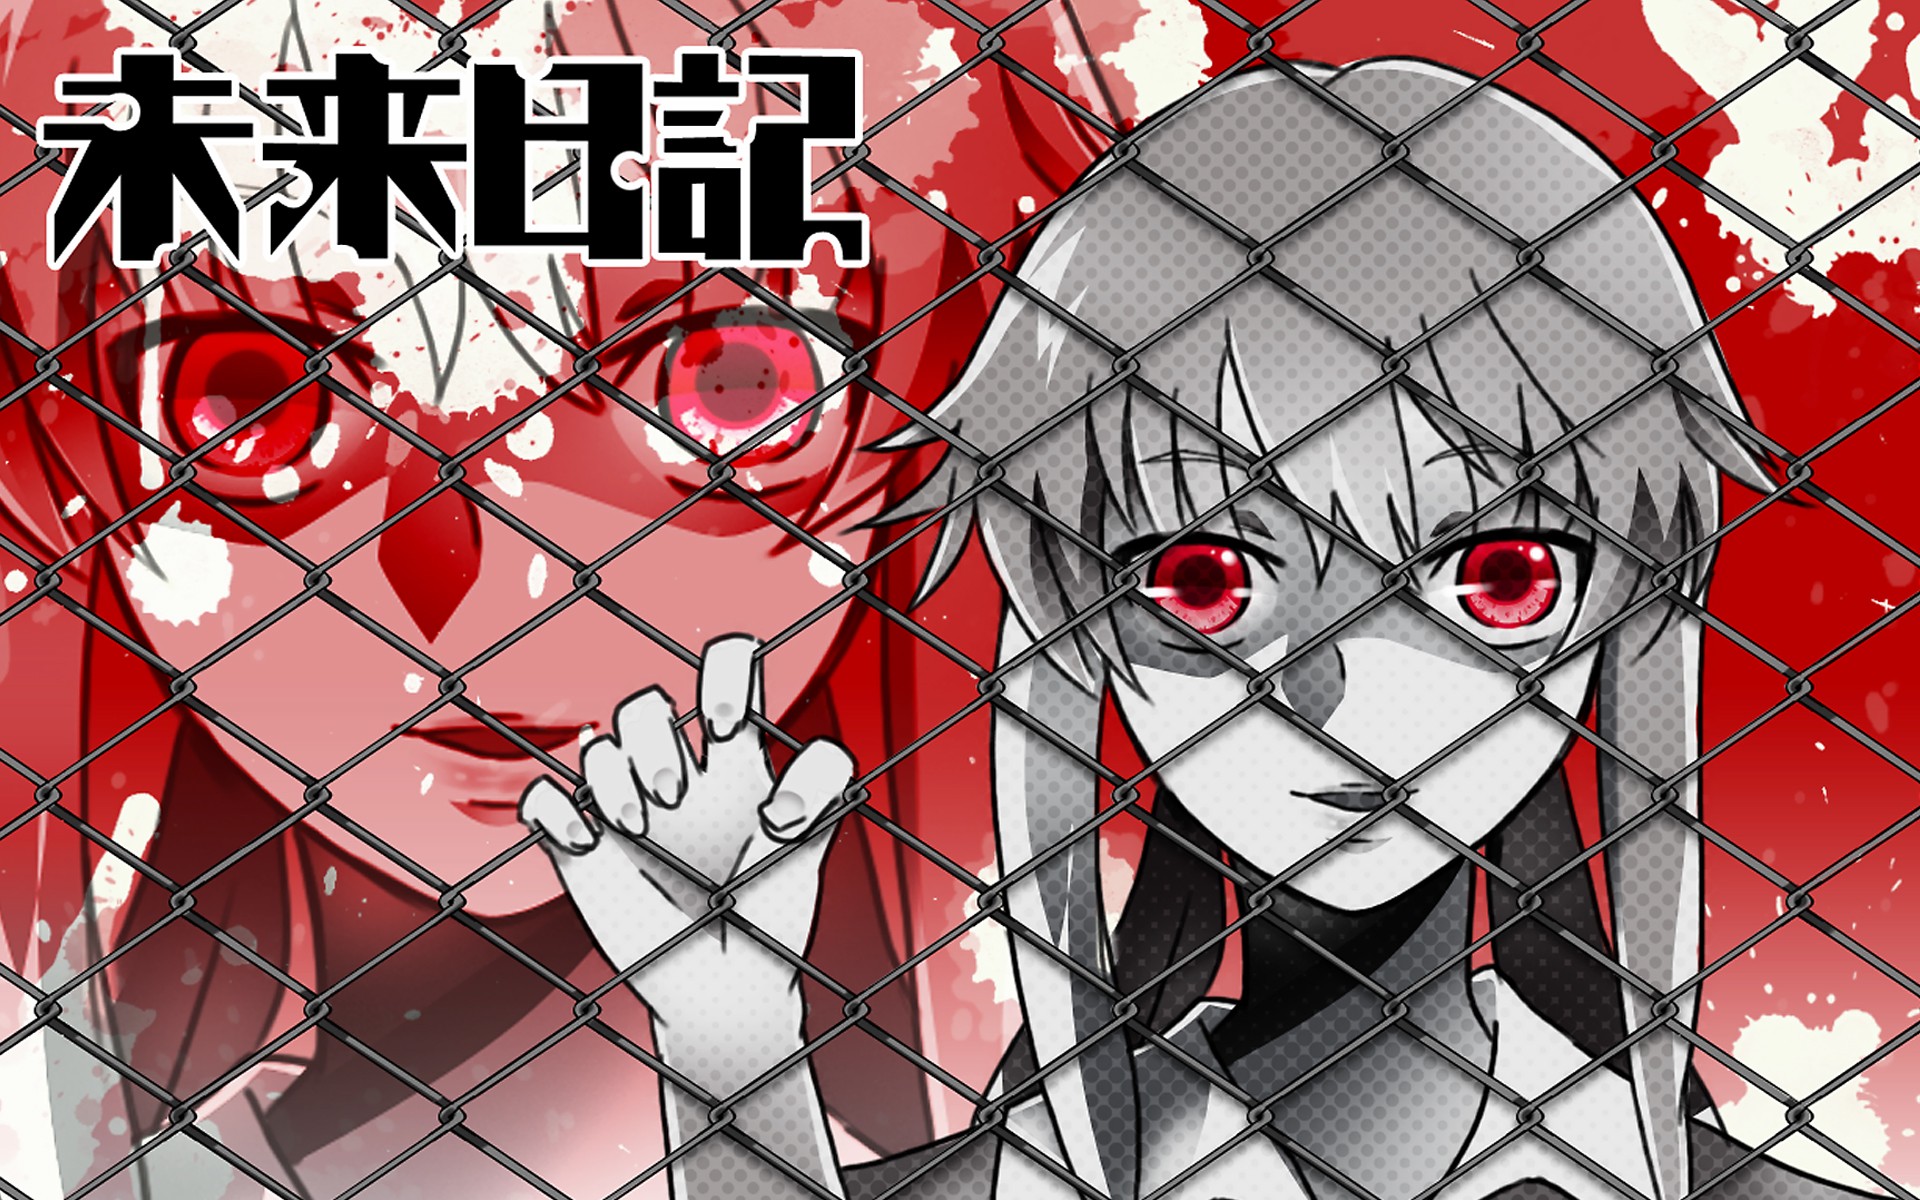 Anime 1920x1200 anime Mirai Nikki anime girls fence red eyes metal grid looking at viewer Gasai Yuno